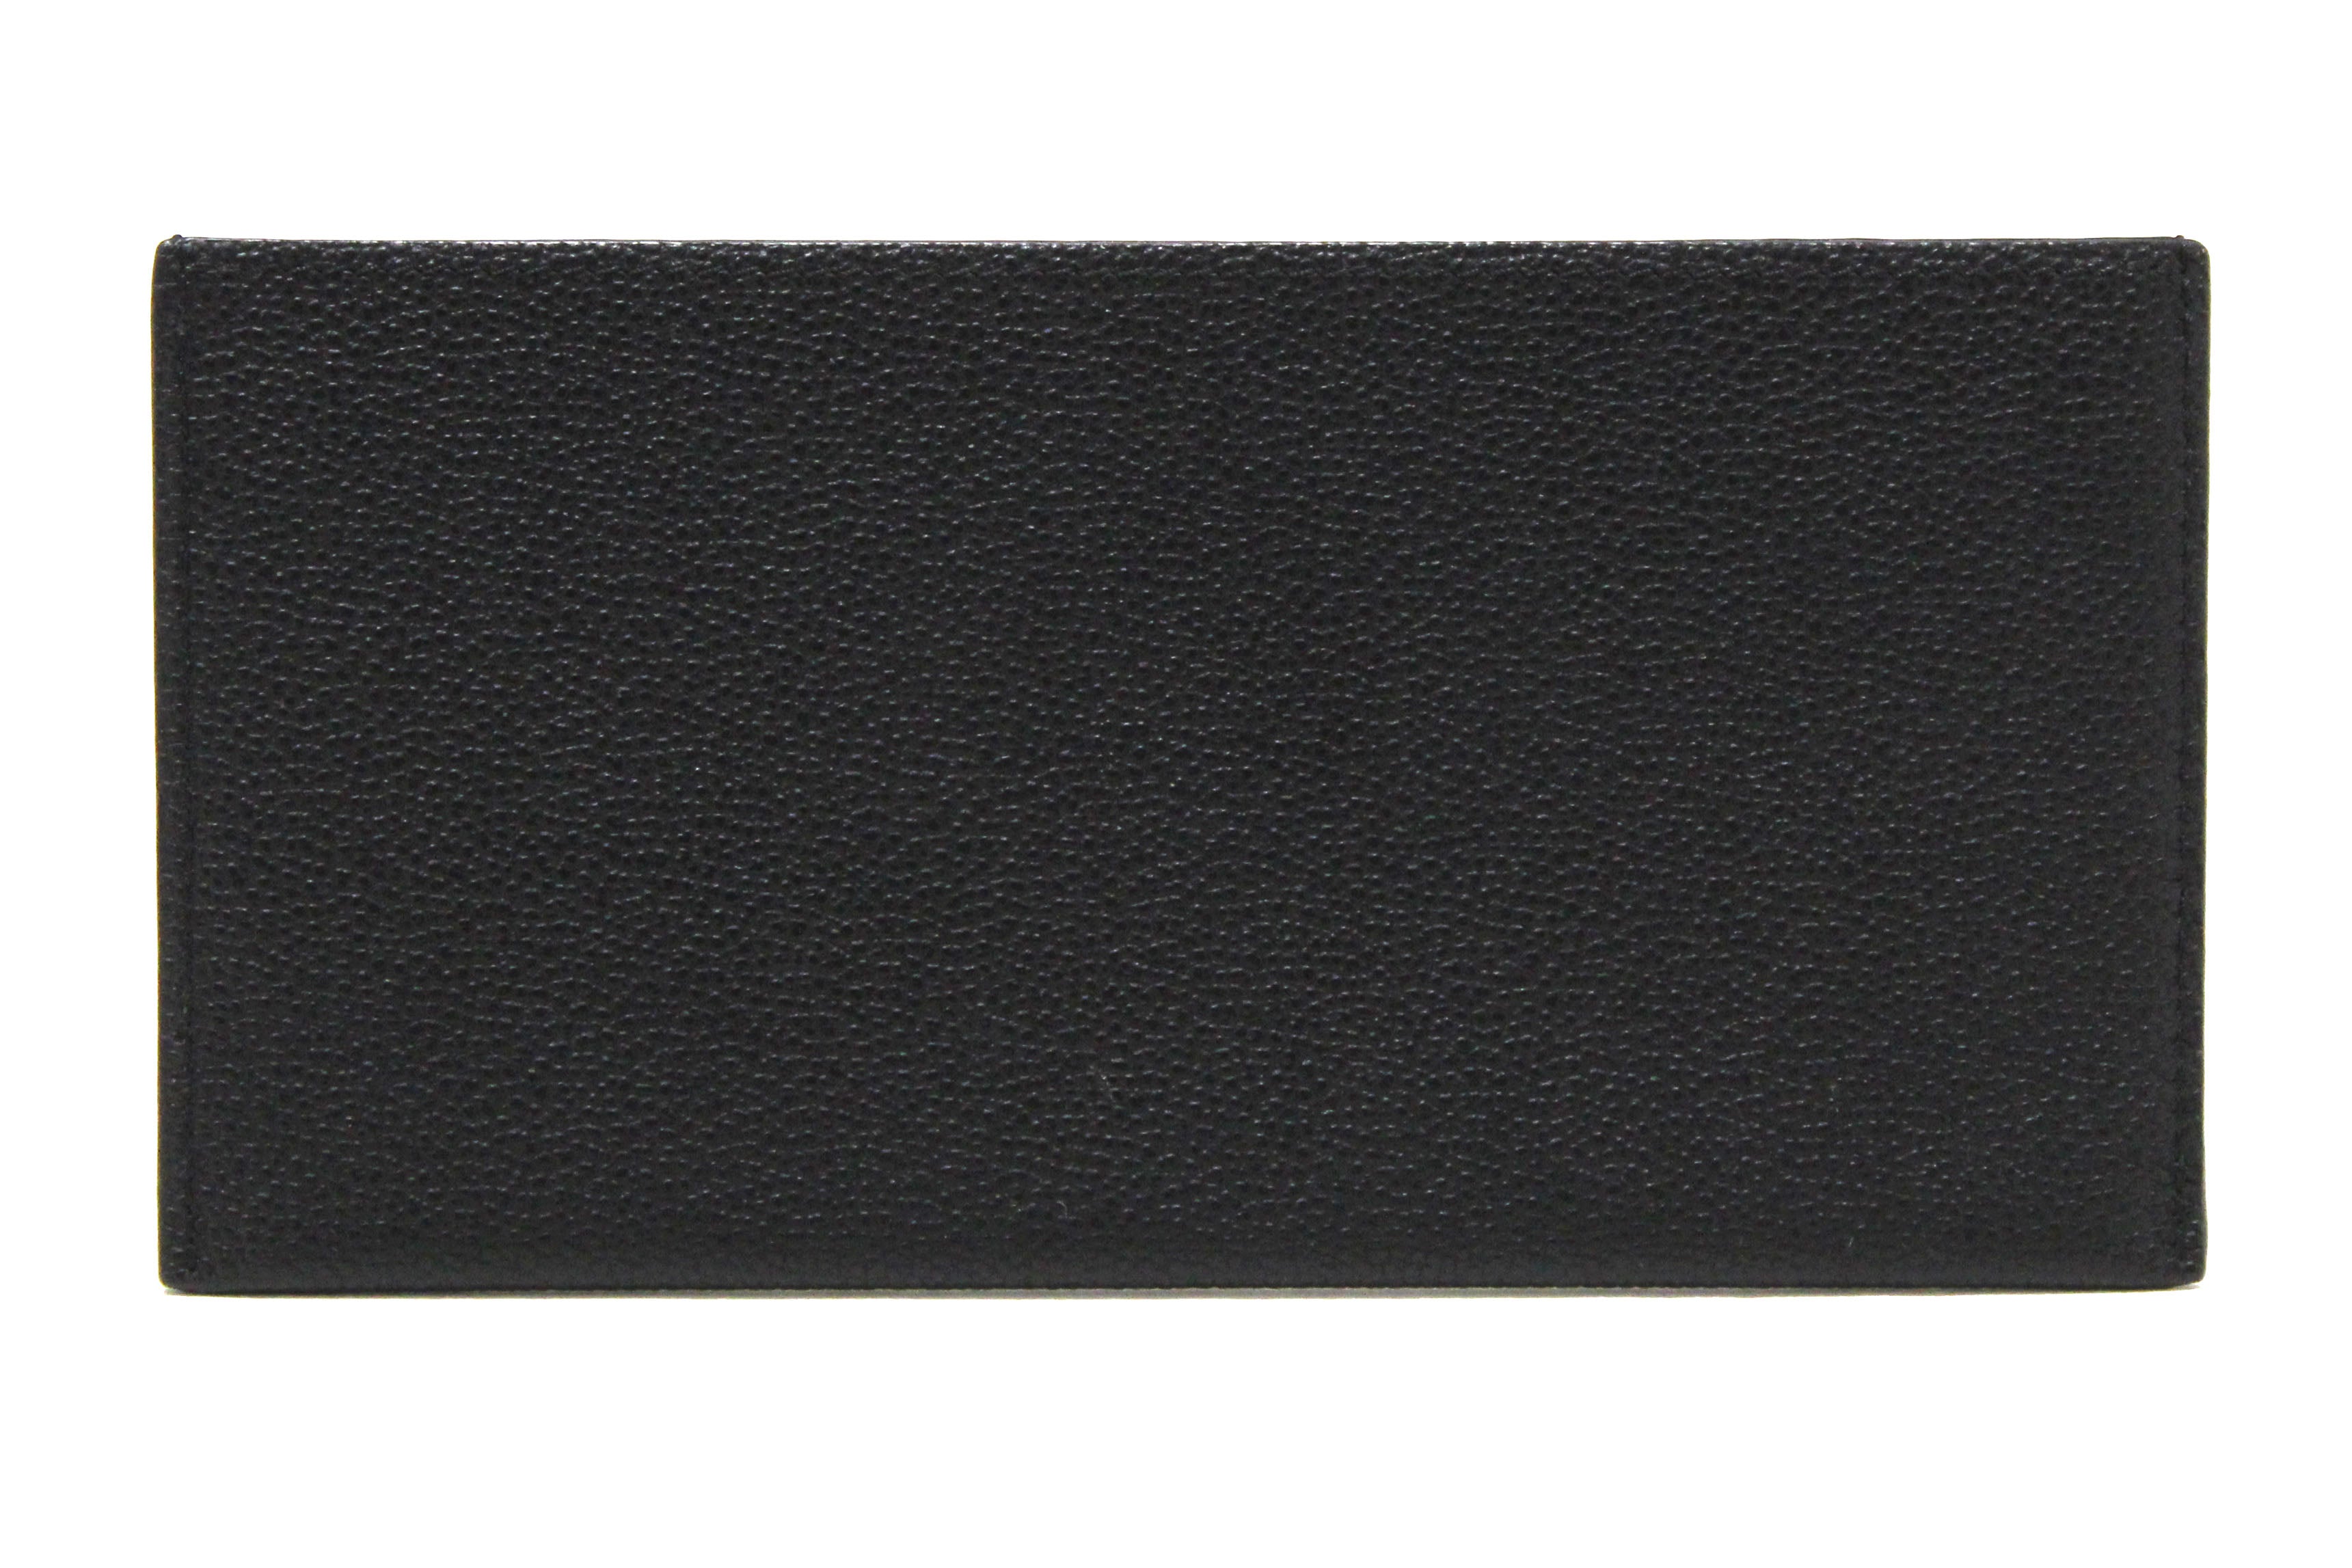 Authentic Louis Vuitton Black Monogram Empreinte Felicie Pochette Bag